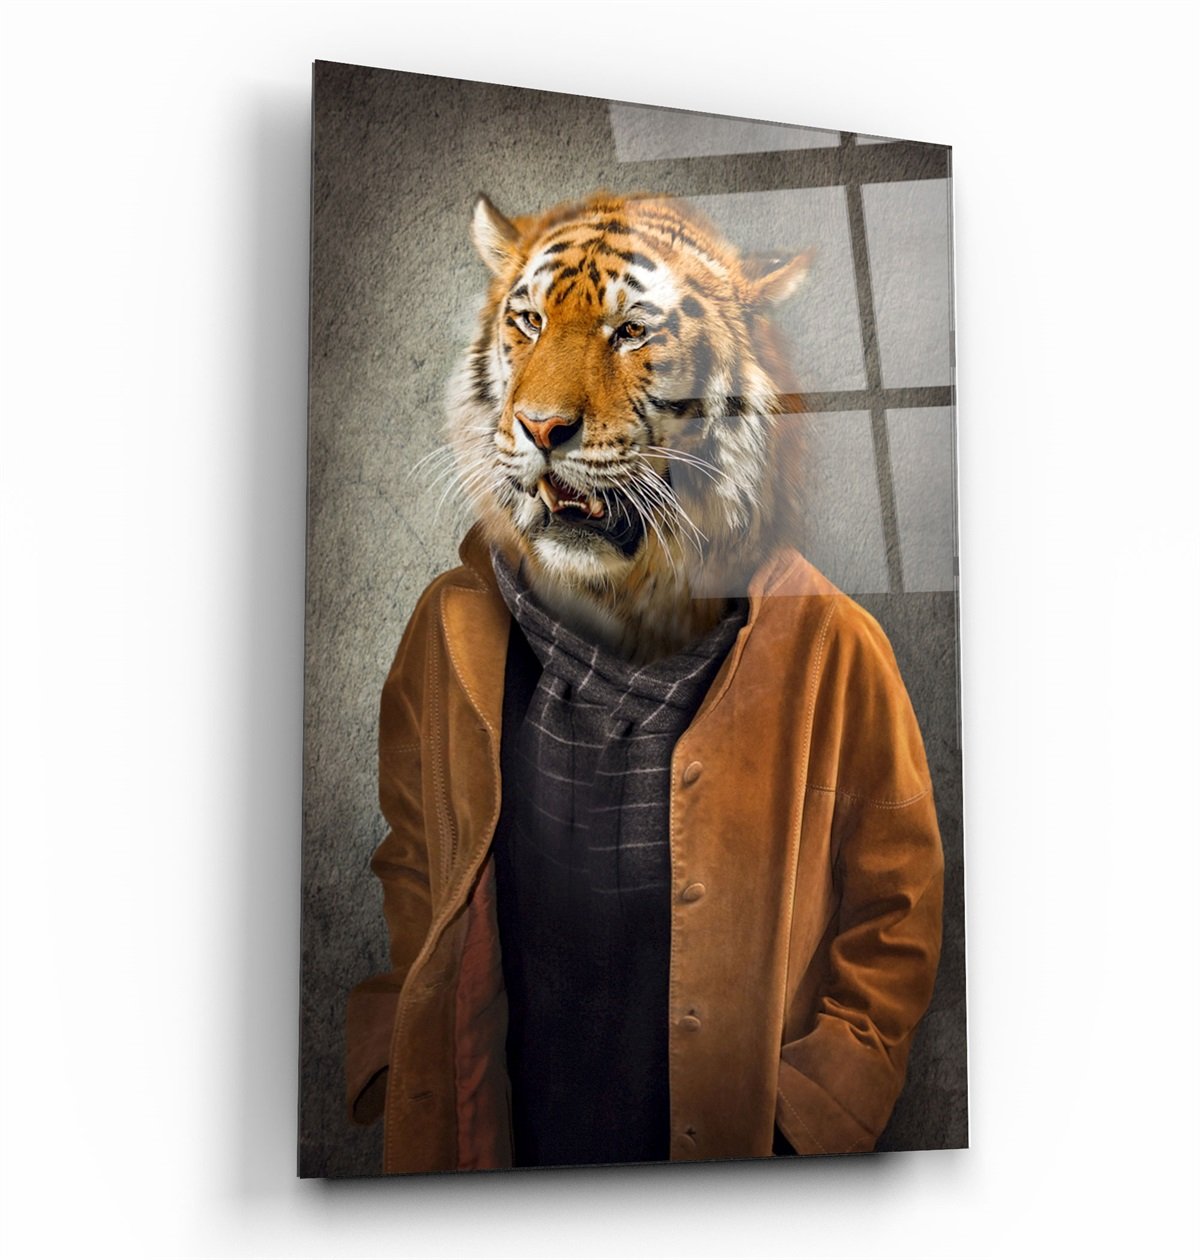 ・"Tiger Head"・Glass Wall Art